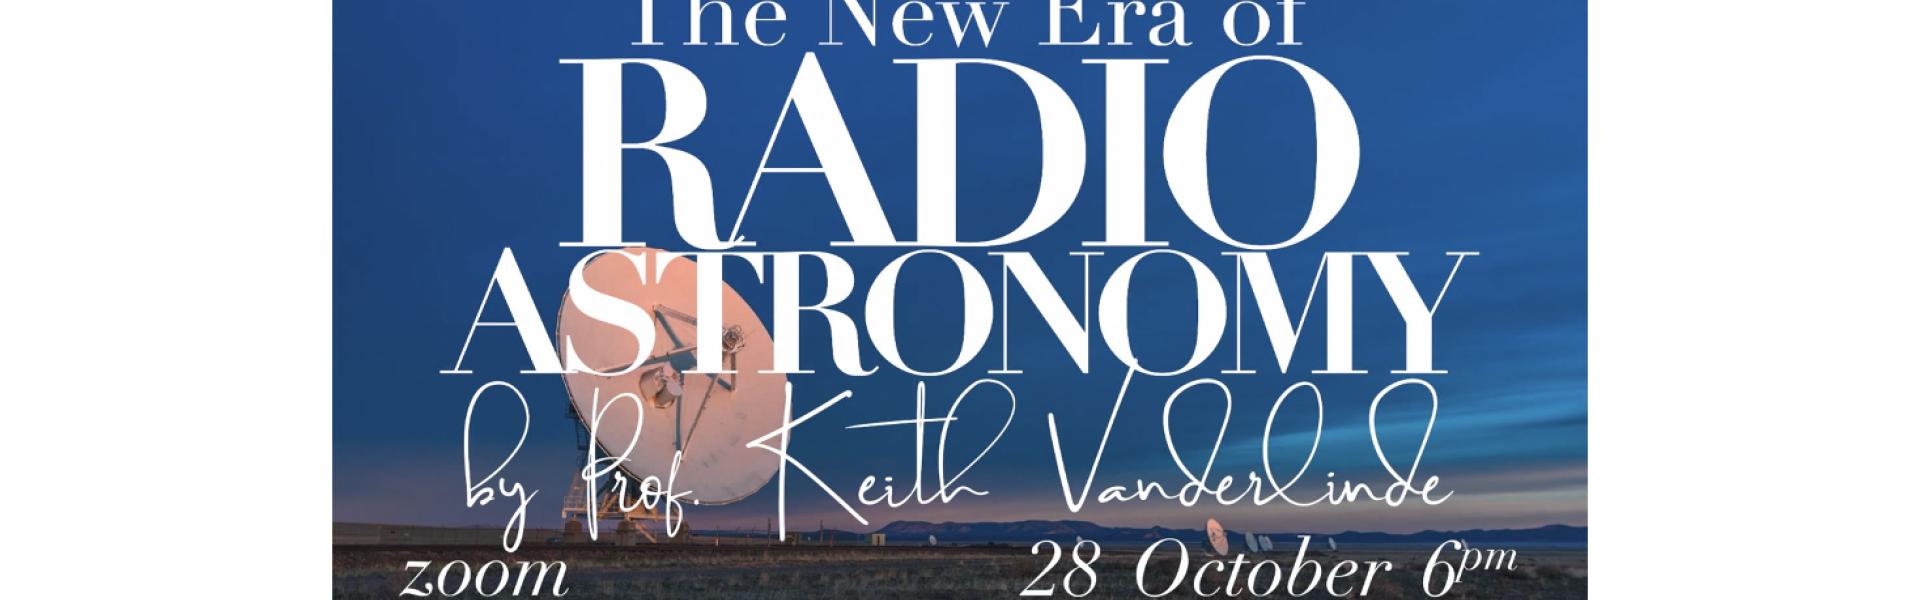 The New Era of Radio Astronomy